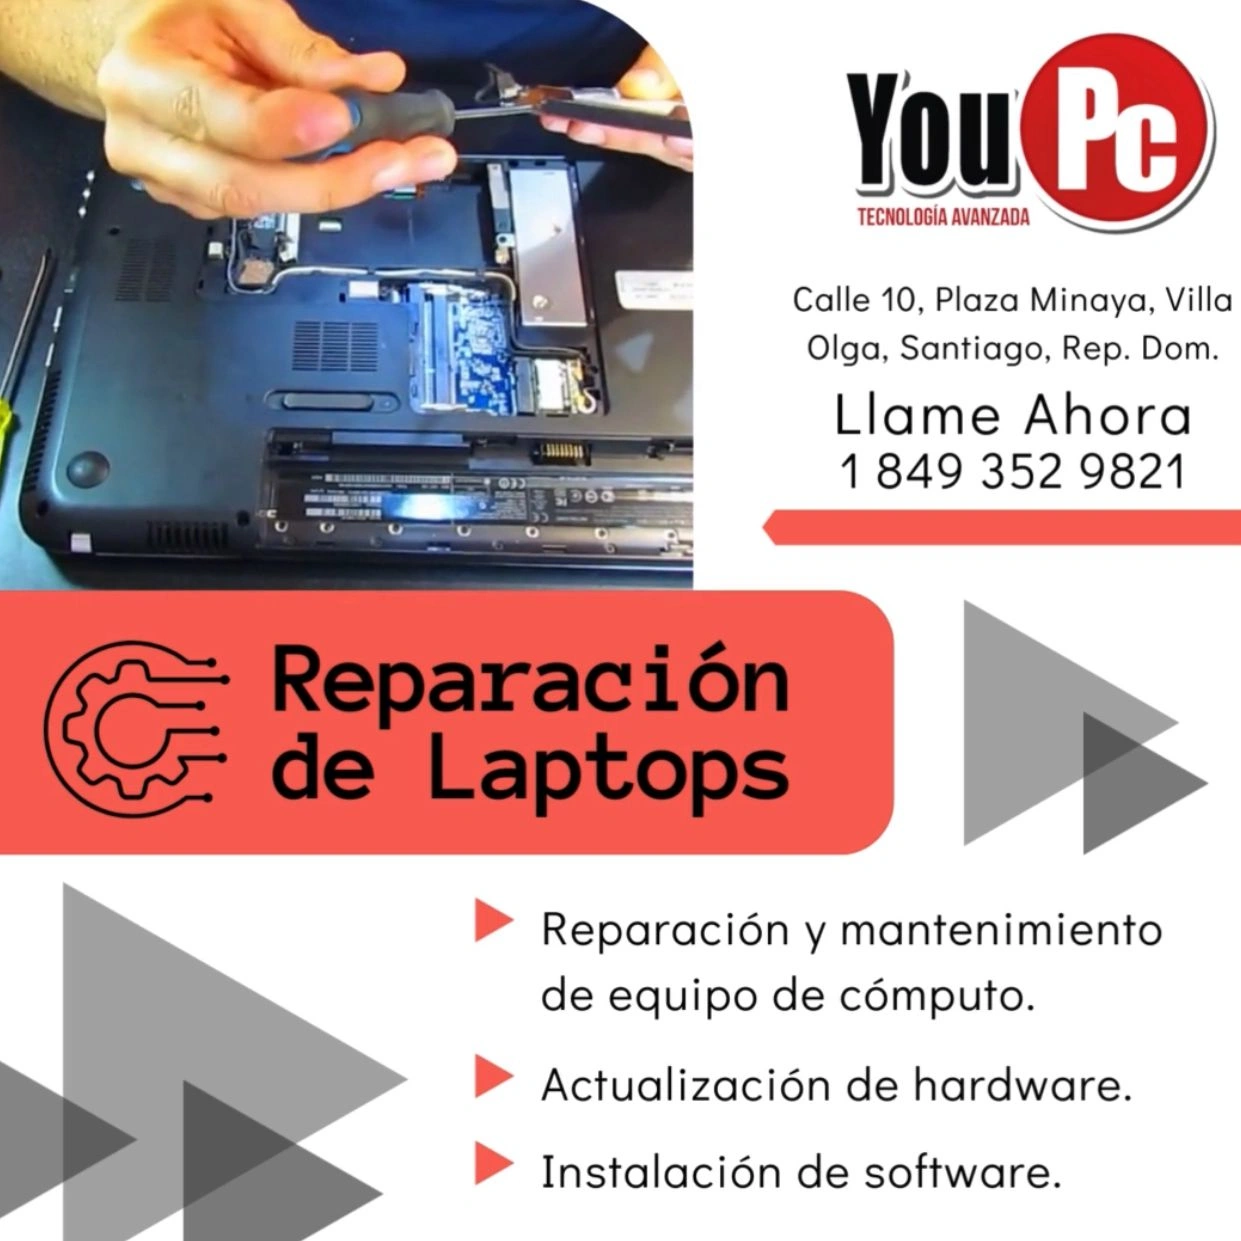 Taller Especializado Repara tu Laptop con Expertos Foto 7221145-L1.jpg